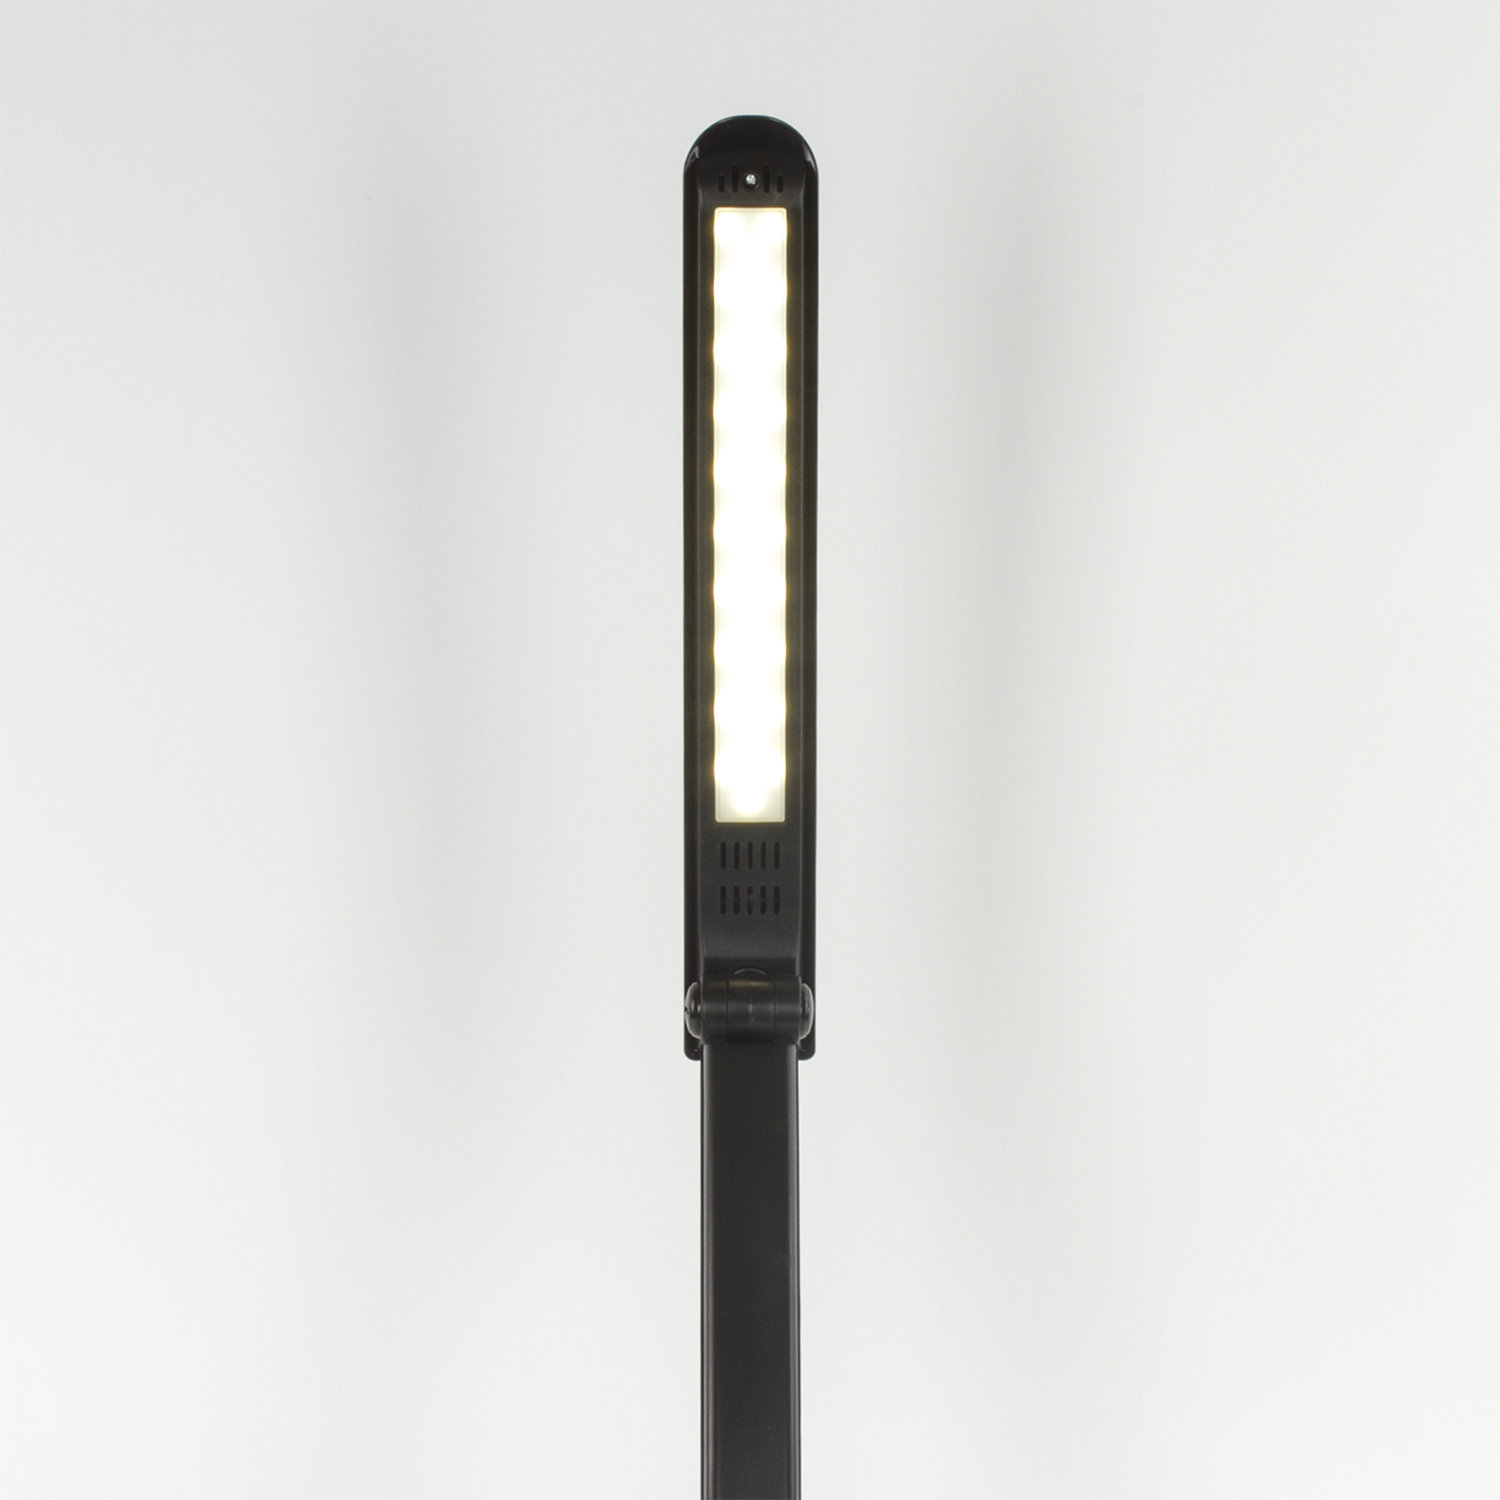 Светильник настольный SONNEN PH-307, на подставке, светодиодный, 9 Вт, пластик, черный, 236684